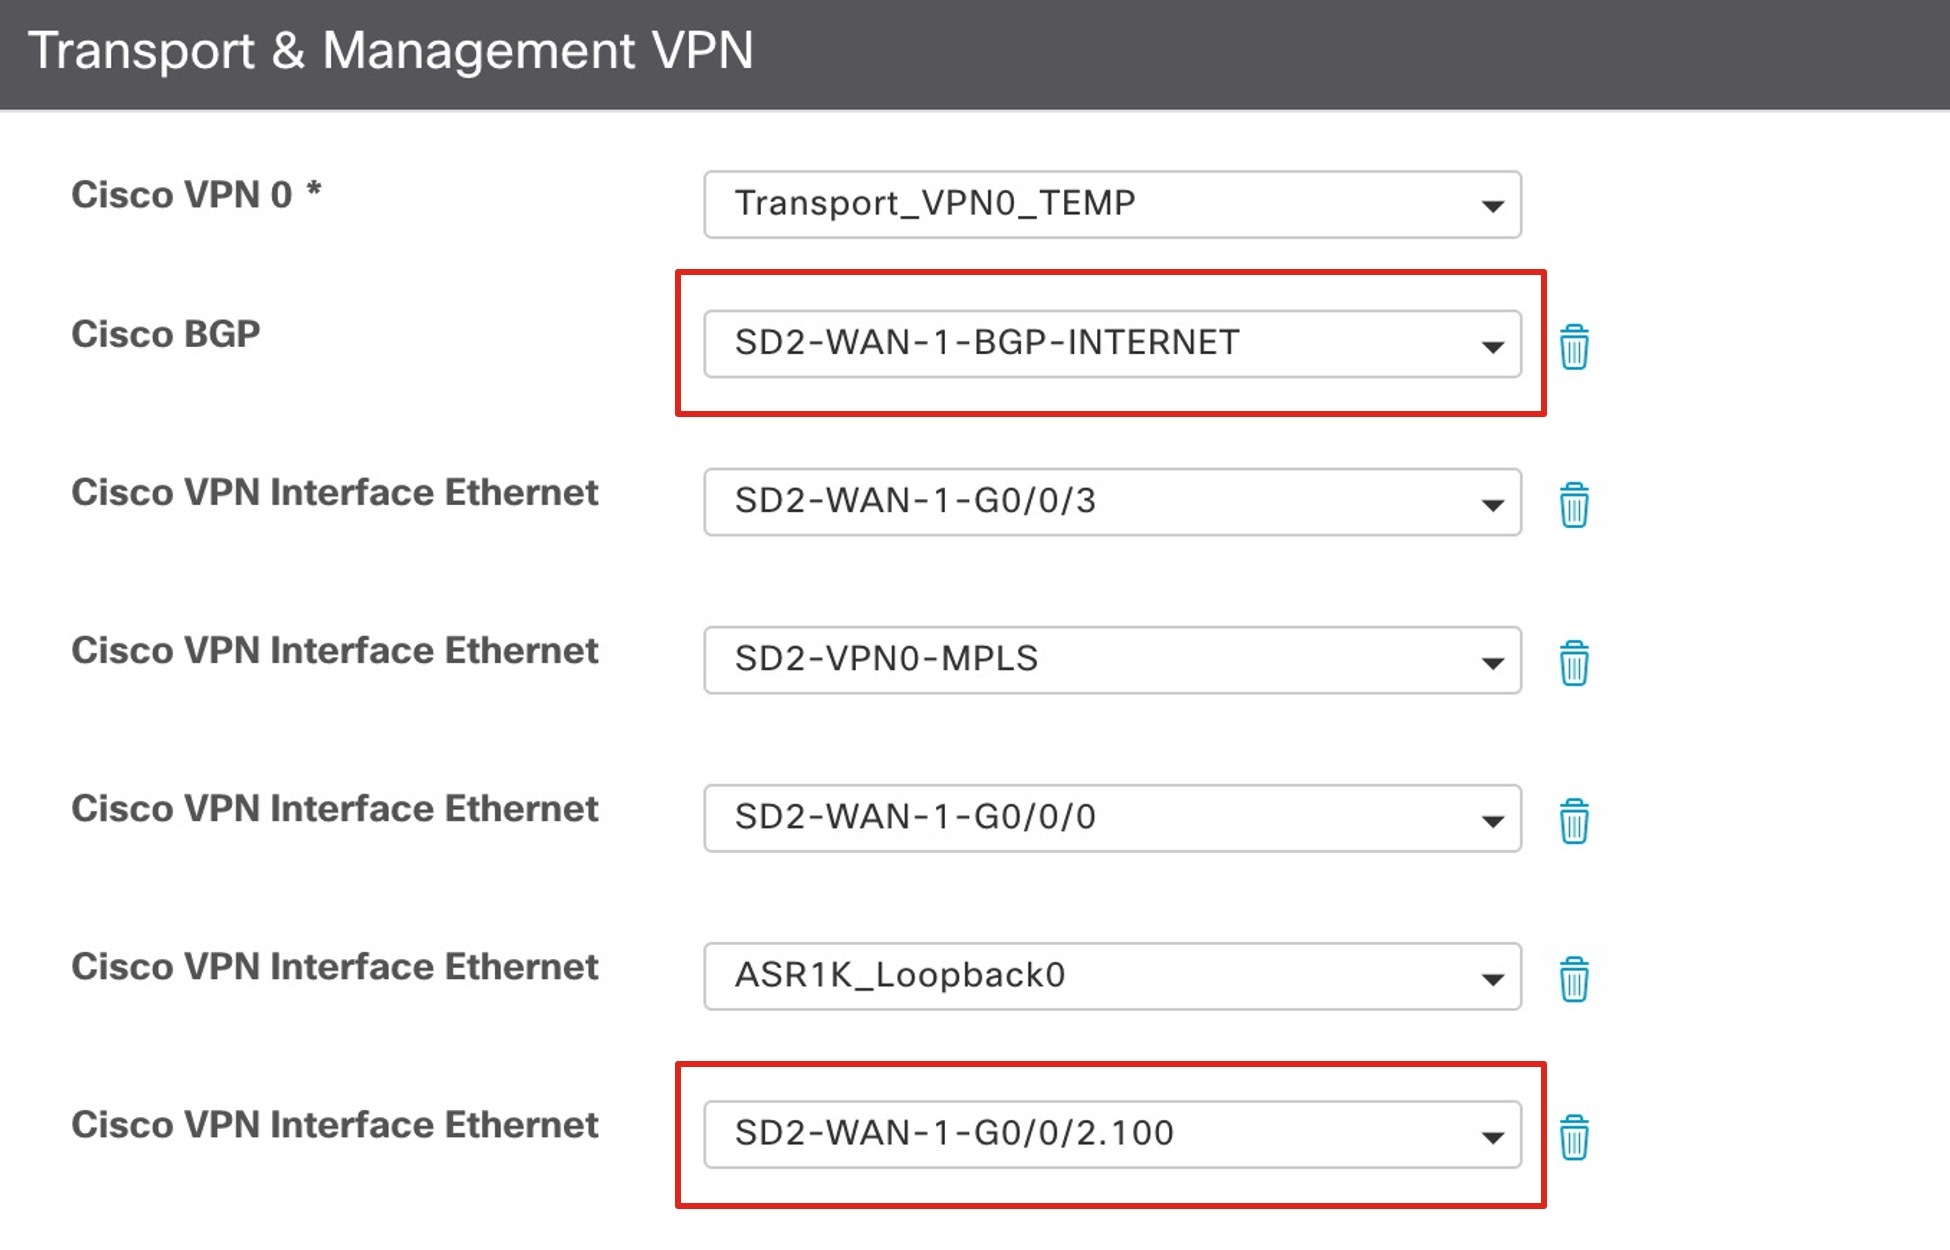 Cisco VPN インターフェイス イーサネット テンプレートの [Transport & Management VPN] エリアに、[Cisco BGP] および [Cisco VPN Interface Ethernet] ドロップダウンリストが表示されます。